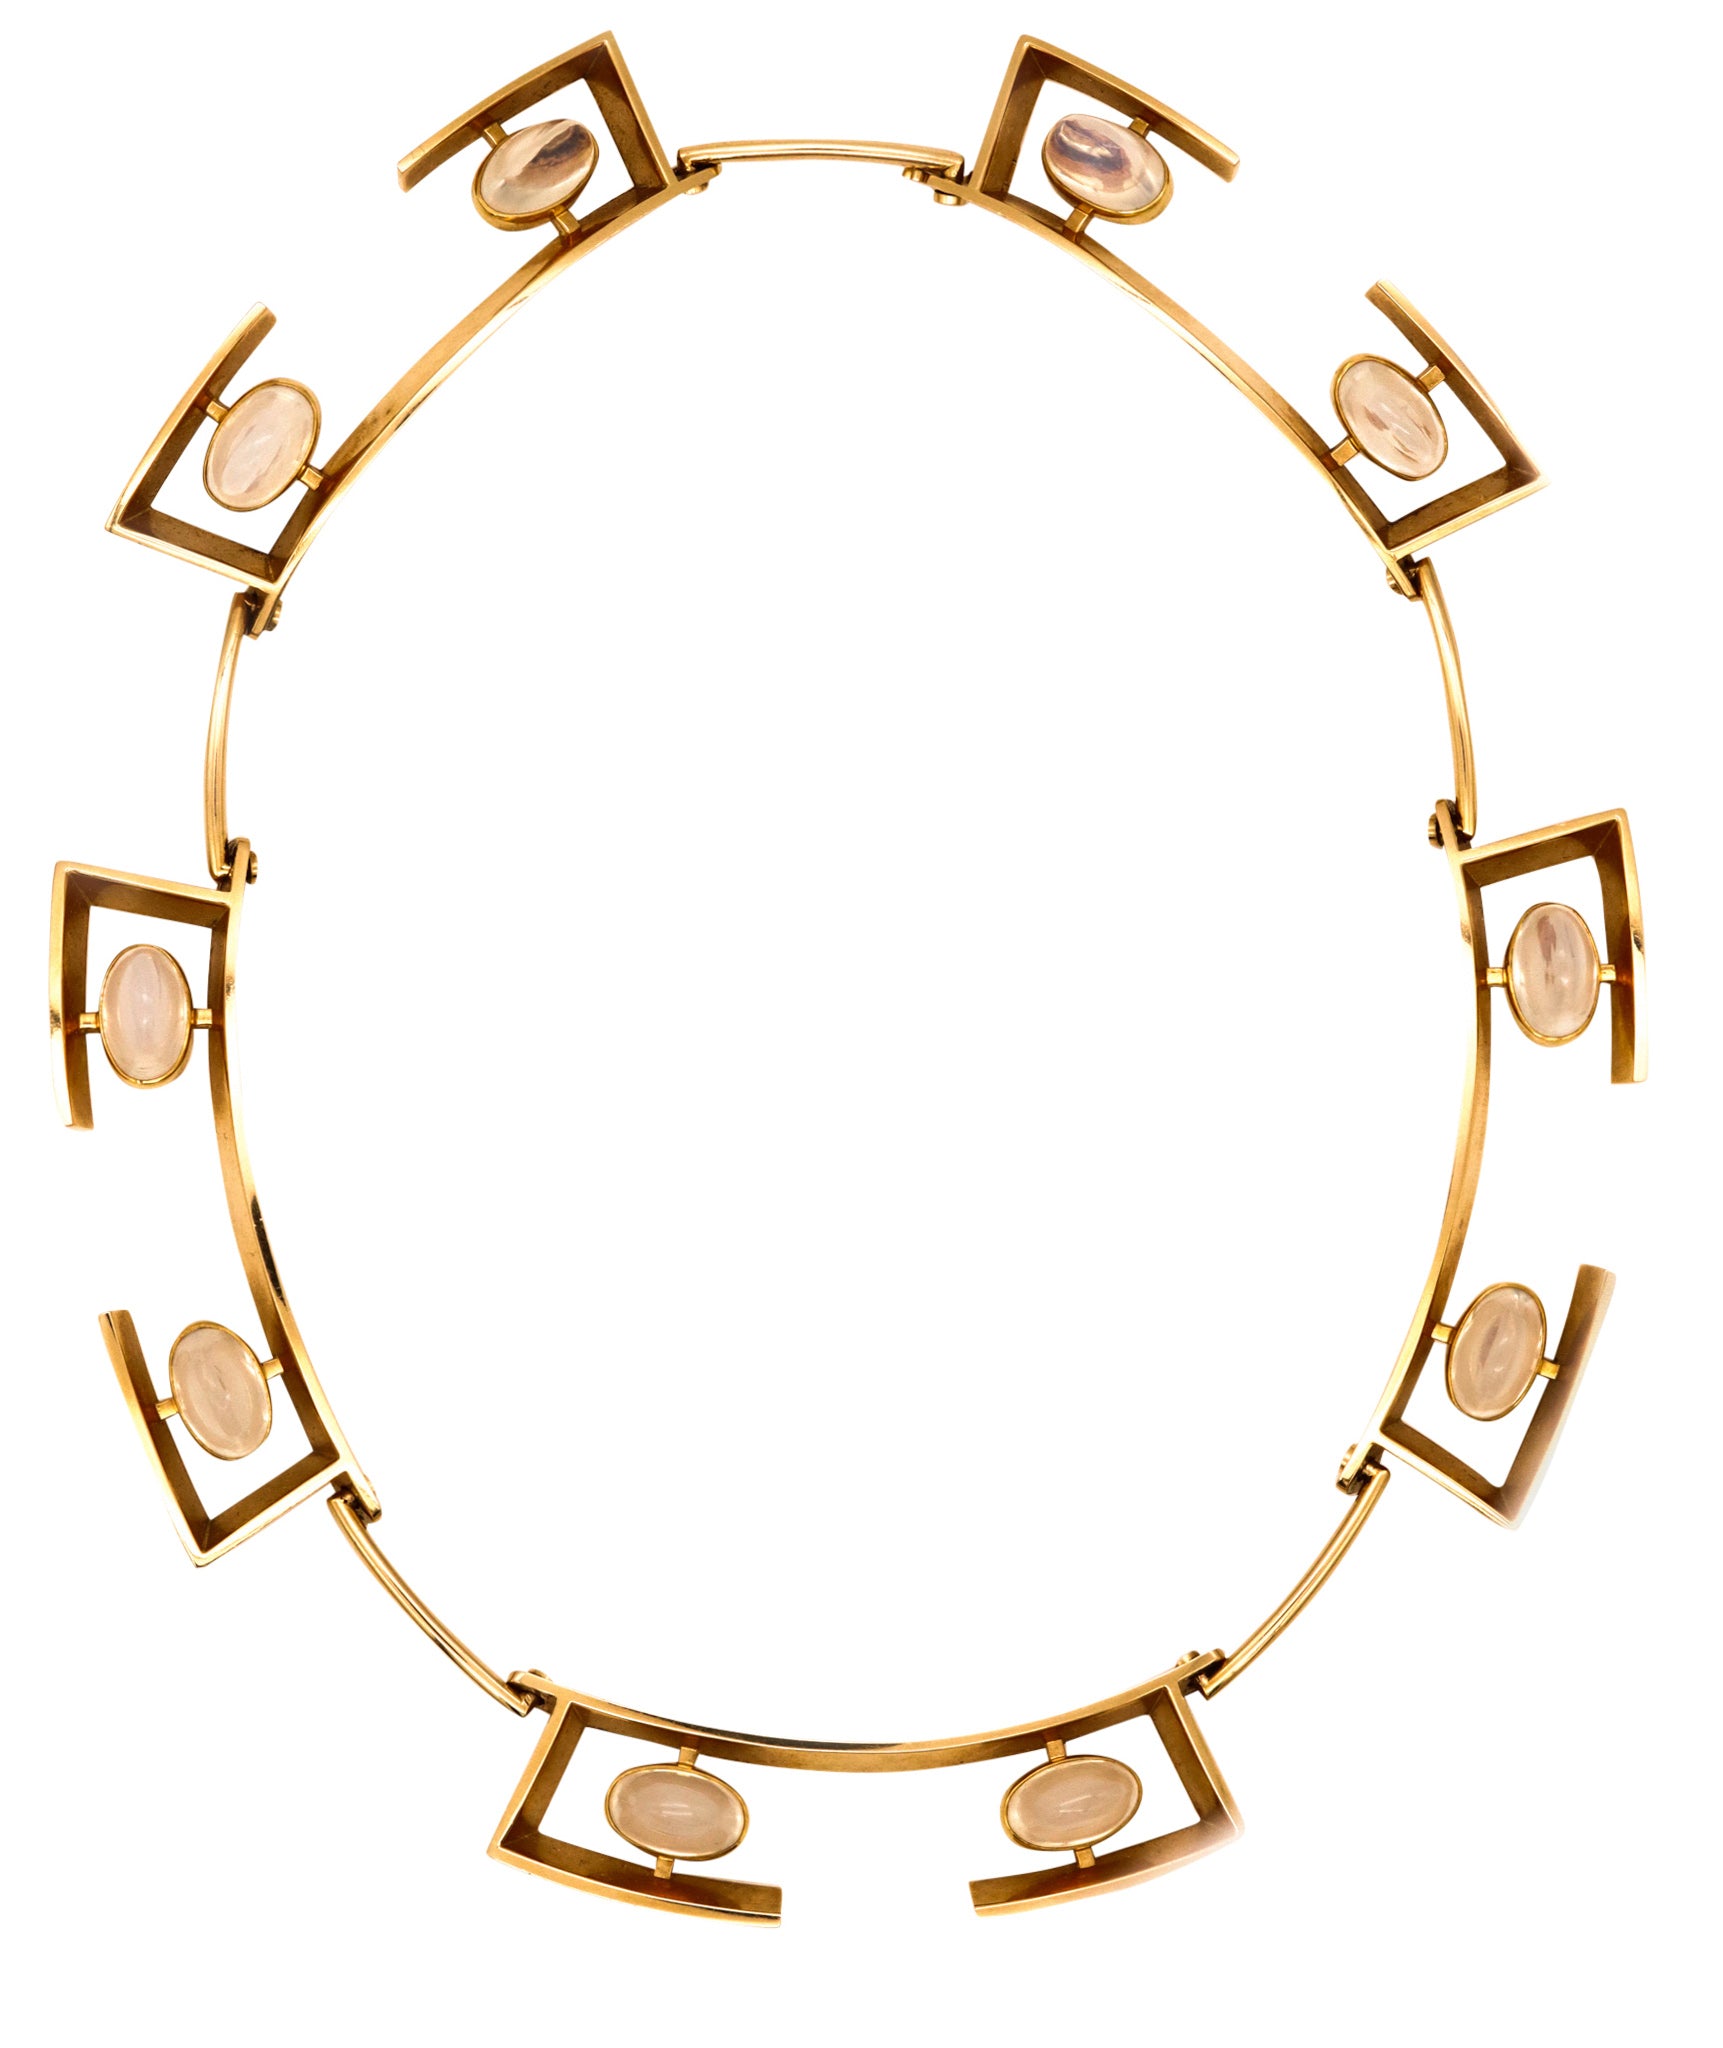 *John Victor Rørvig 1965 geometric necklace in 18kt with Moonstones Gemstones